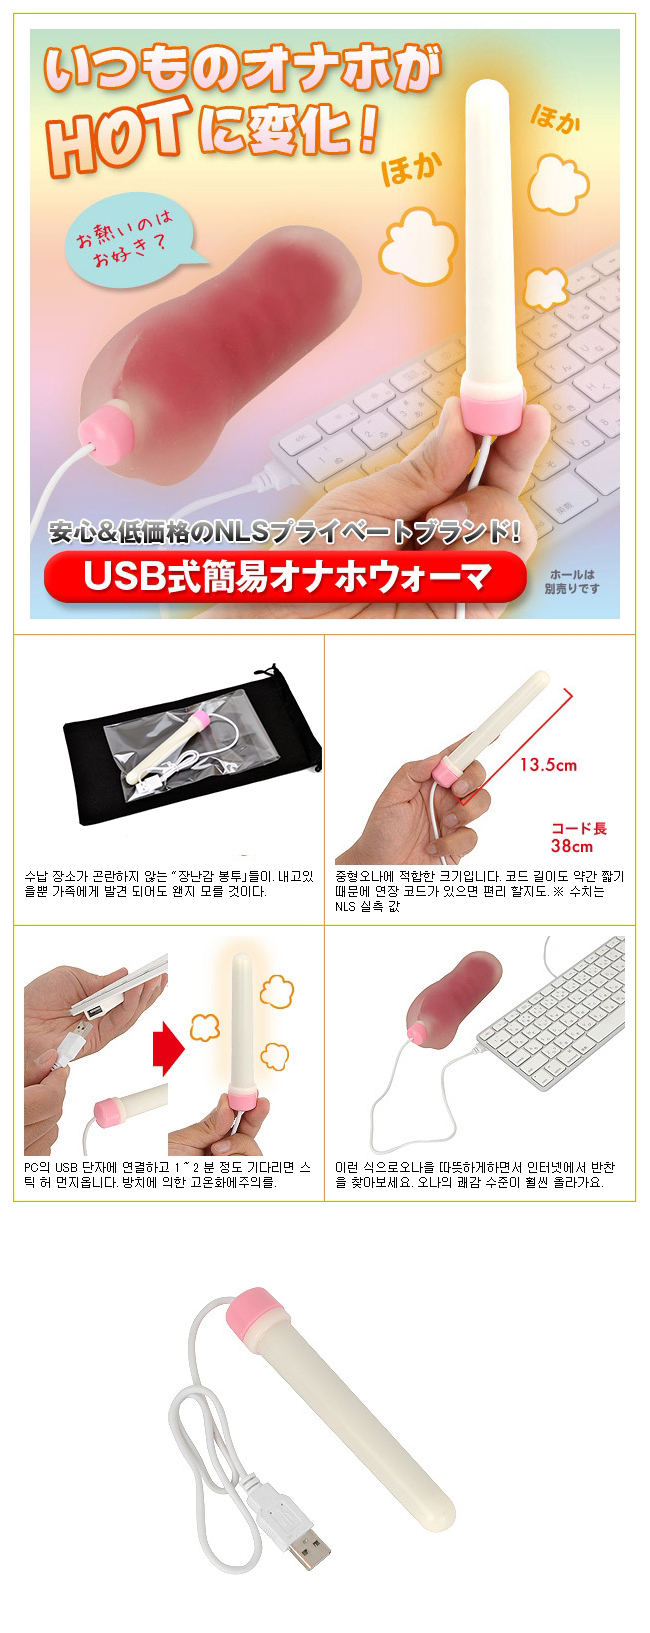 [일본 직수입] USB 간이식 오나홀 워머(USB式簡易オナホウォーマ)